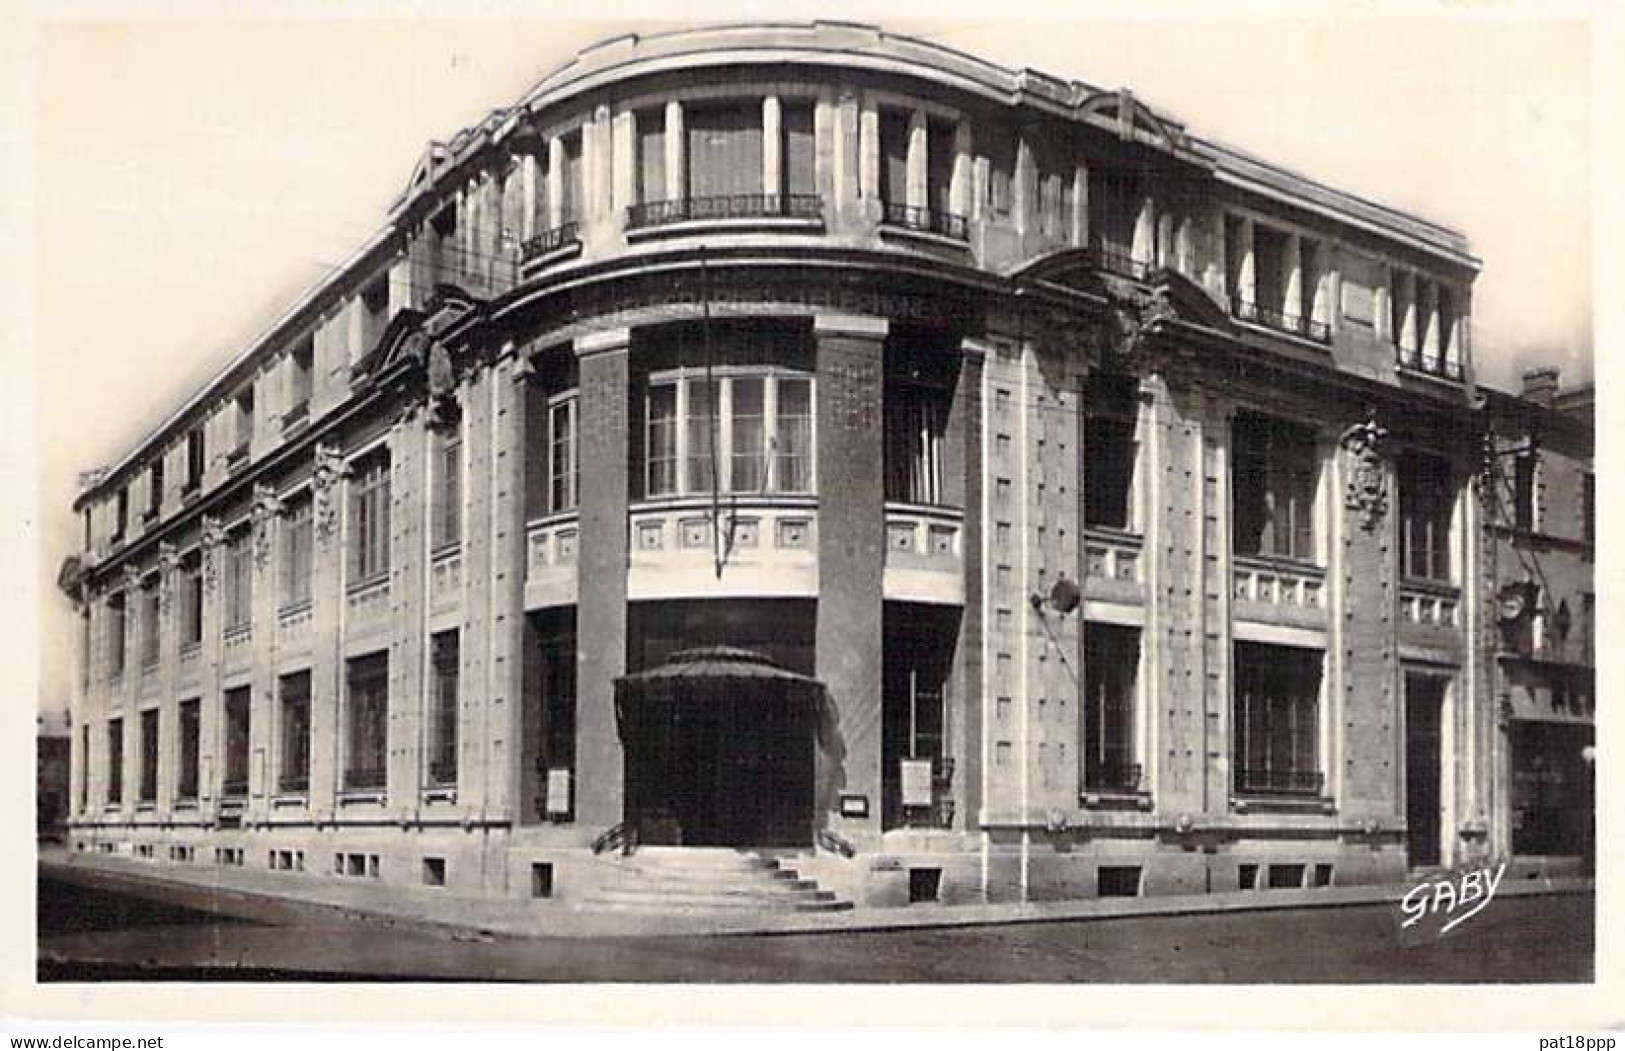 FRANCE - Thème POSTE (PTT) - Lot de 15 jolies CPSM dentelées 1950-70's (bureaux des Postes diversifiés) en BON ETAT